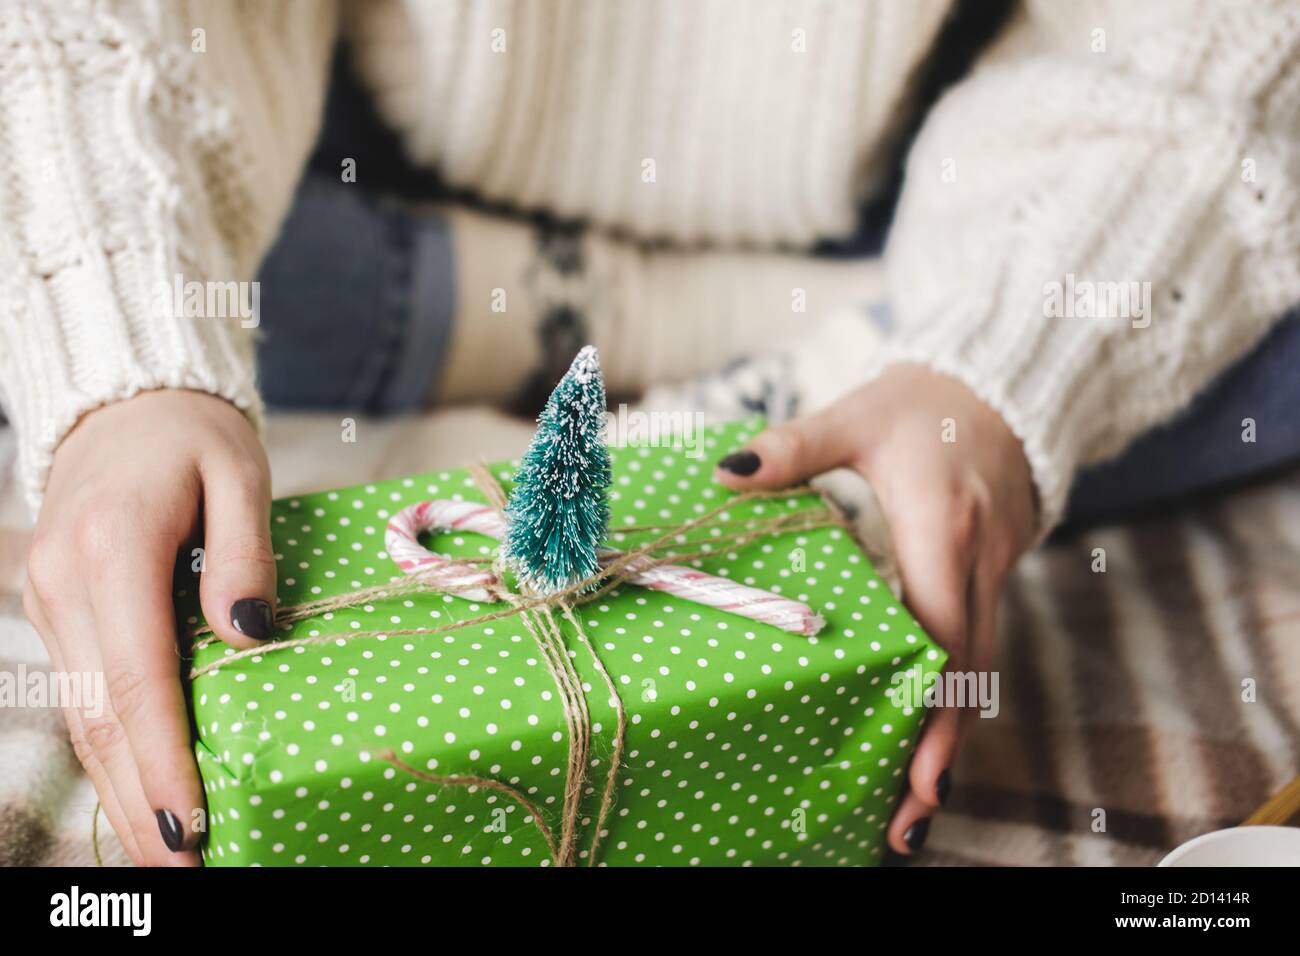 Giovane donna si siede su plaid in maglia accogliente pullover bianco lana, calzini e avvolge regalo di Natale in polka dot wrapping carta. Vassoio in legno con tazza di co Foto Stock